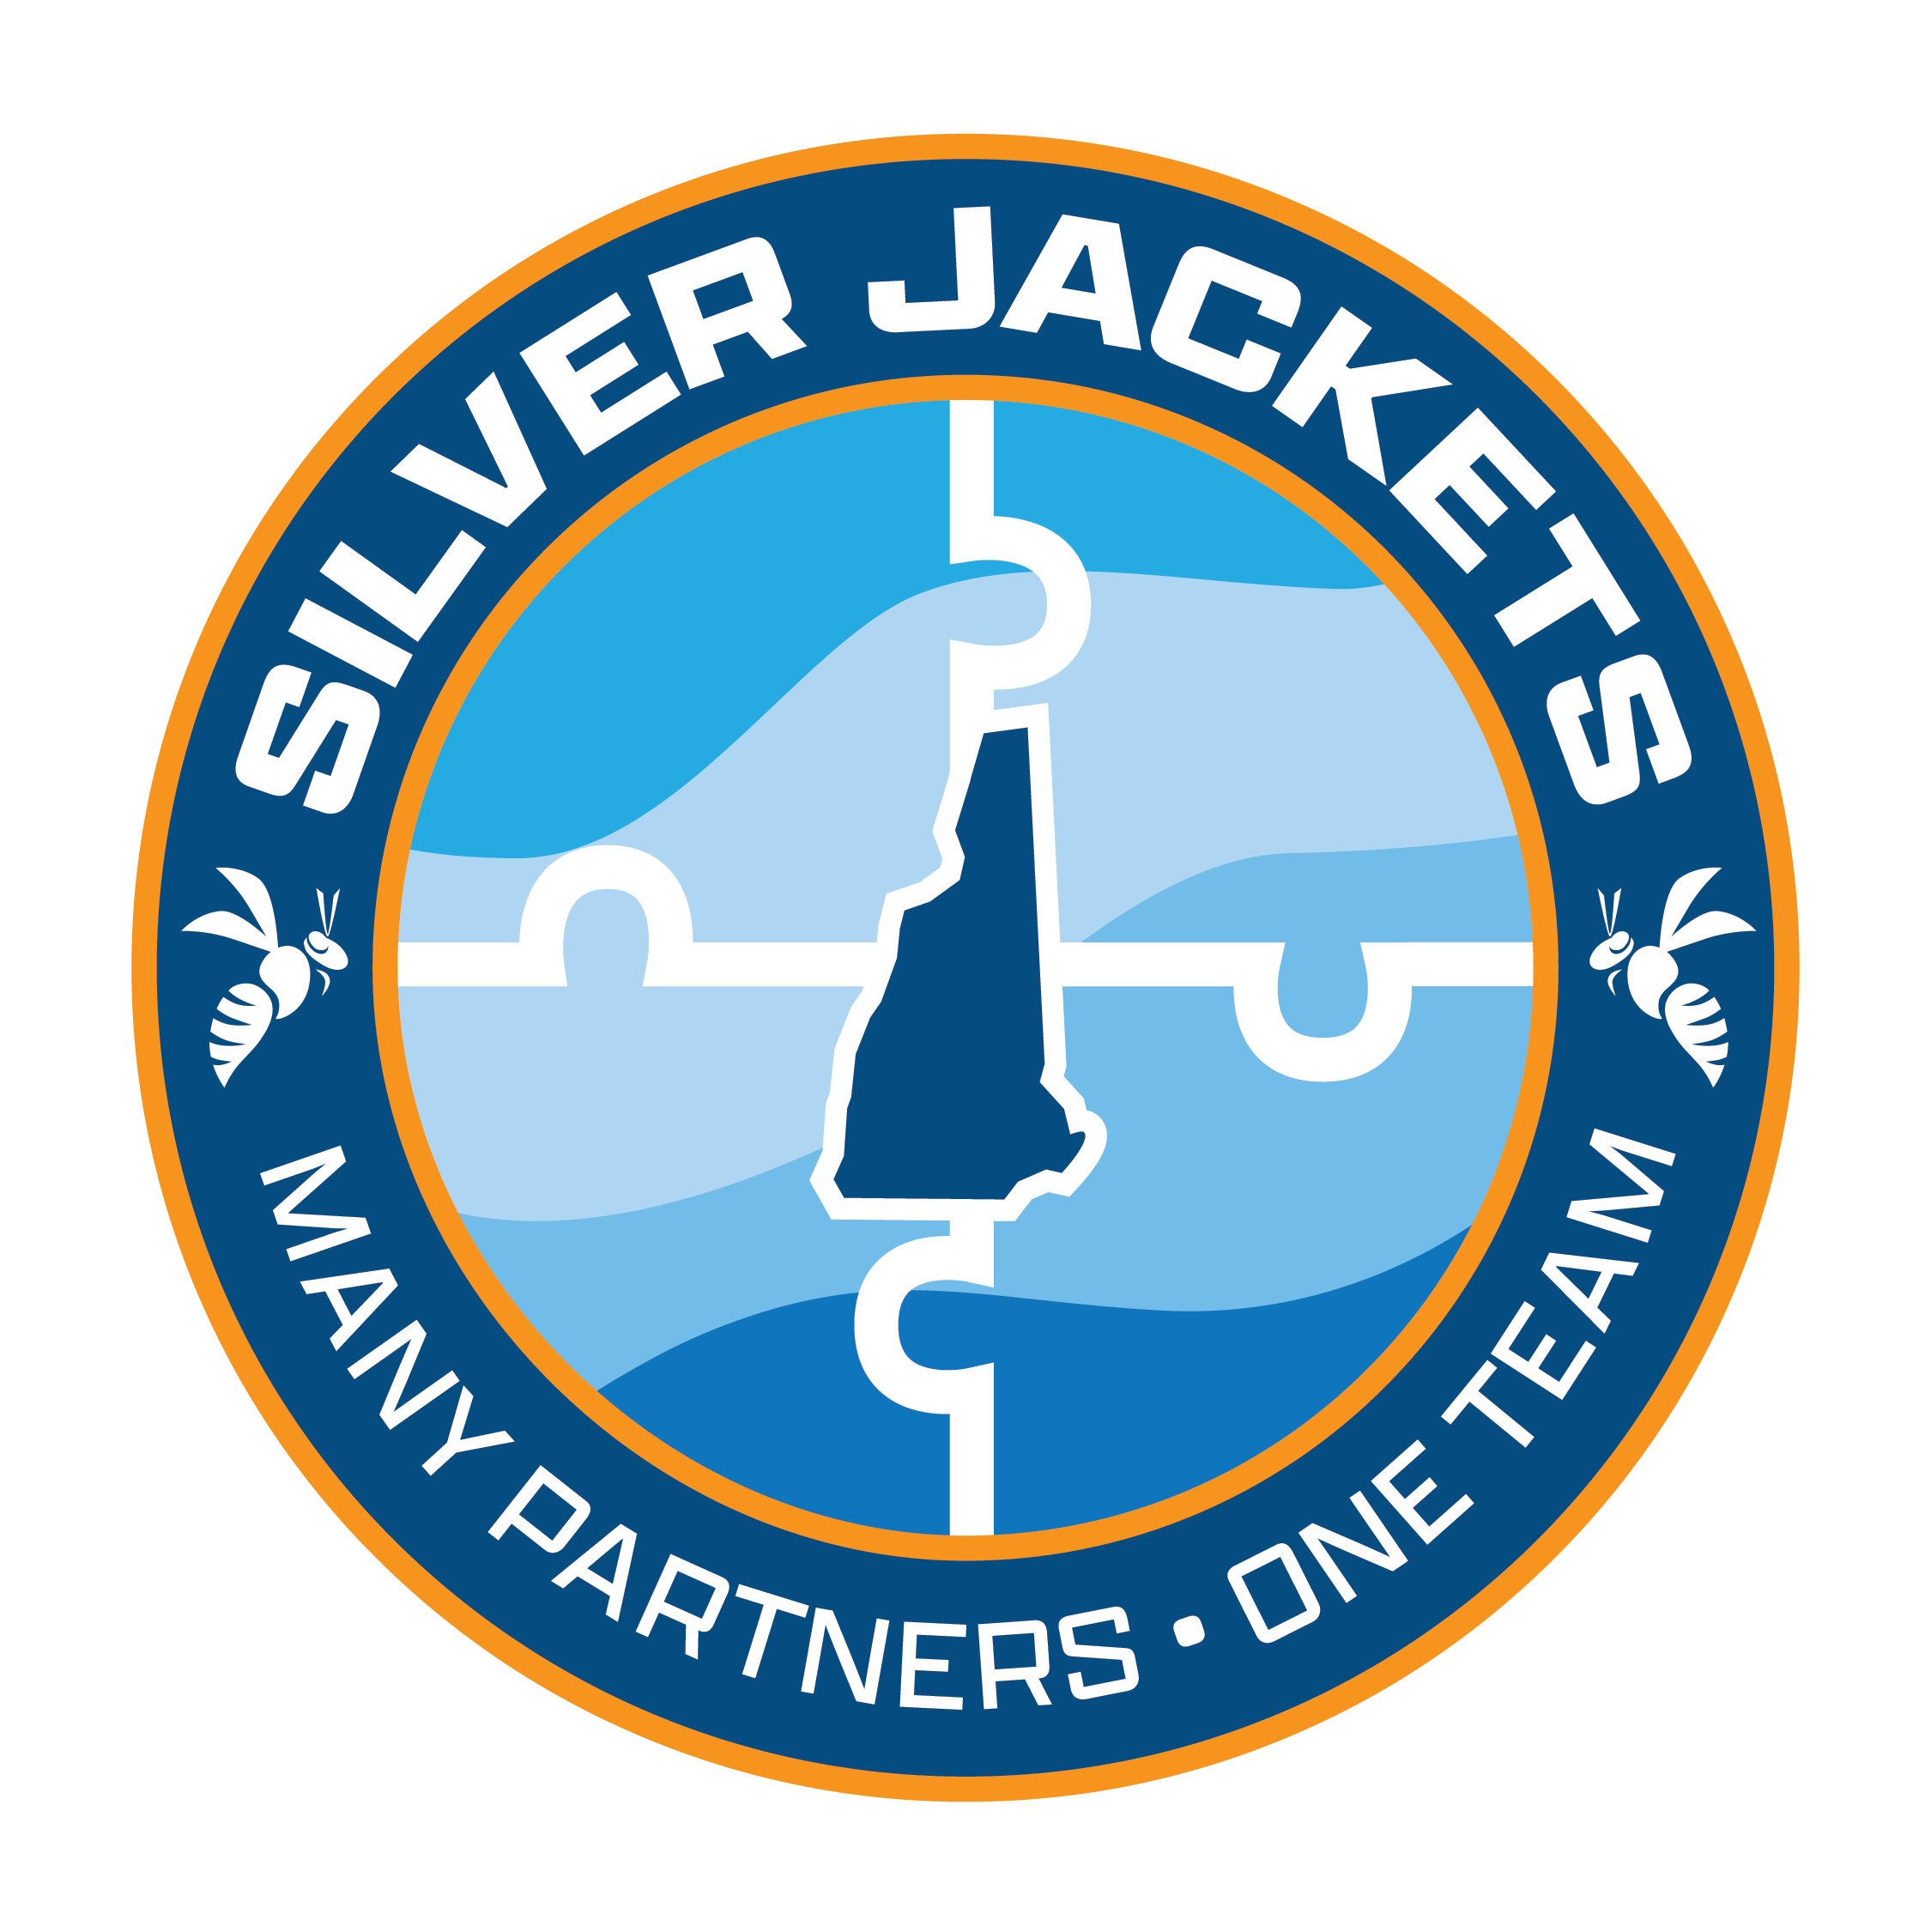 New Hampshire Silver Jackets logo